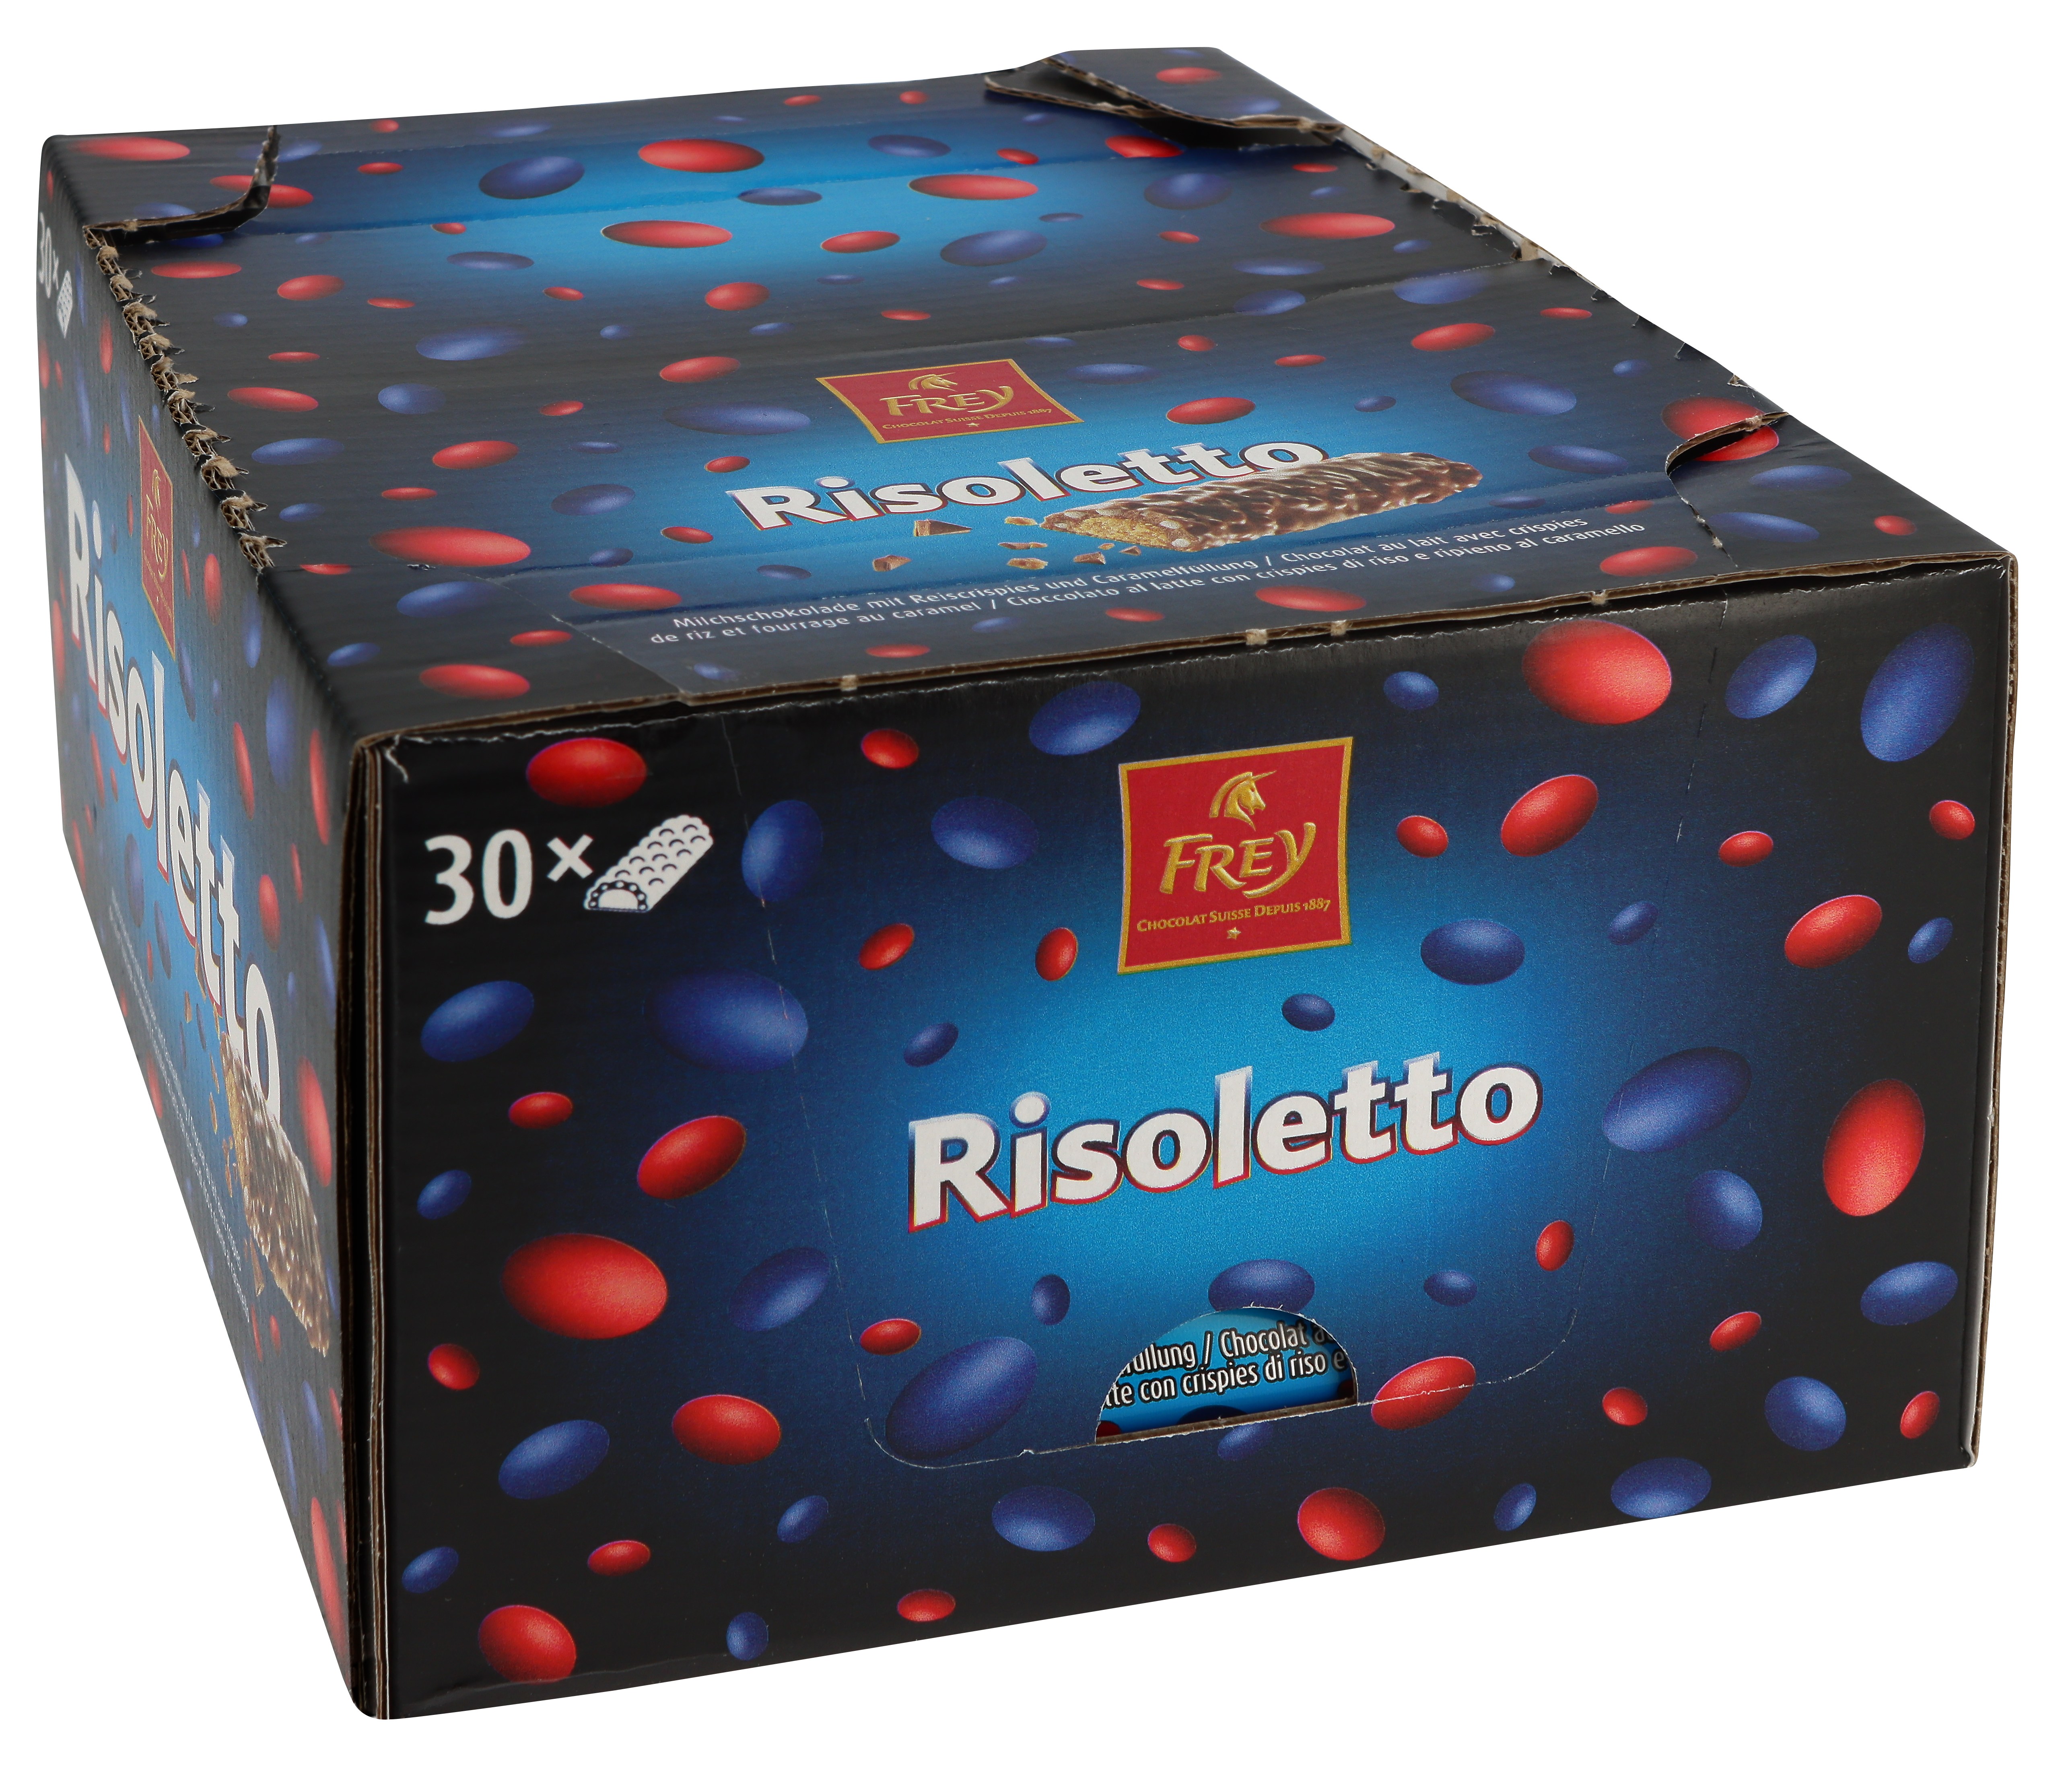 FREY Risoletto Milch 30x42g 10183043 Schokoladenriegel